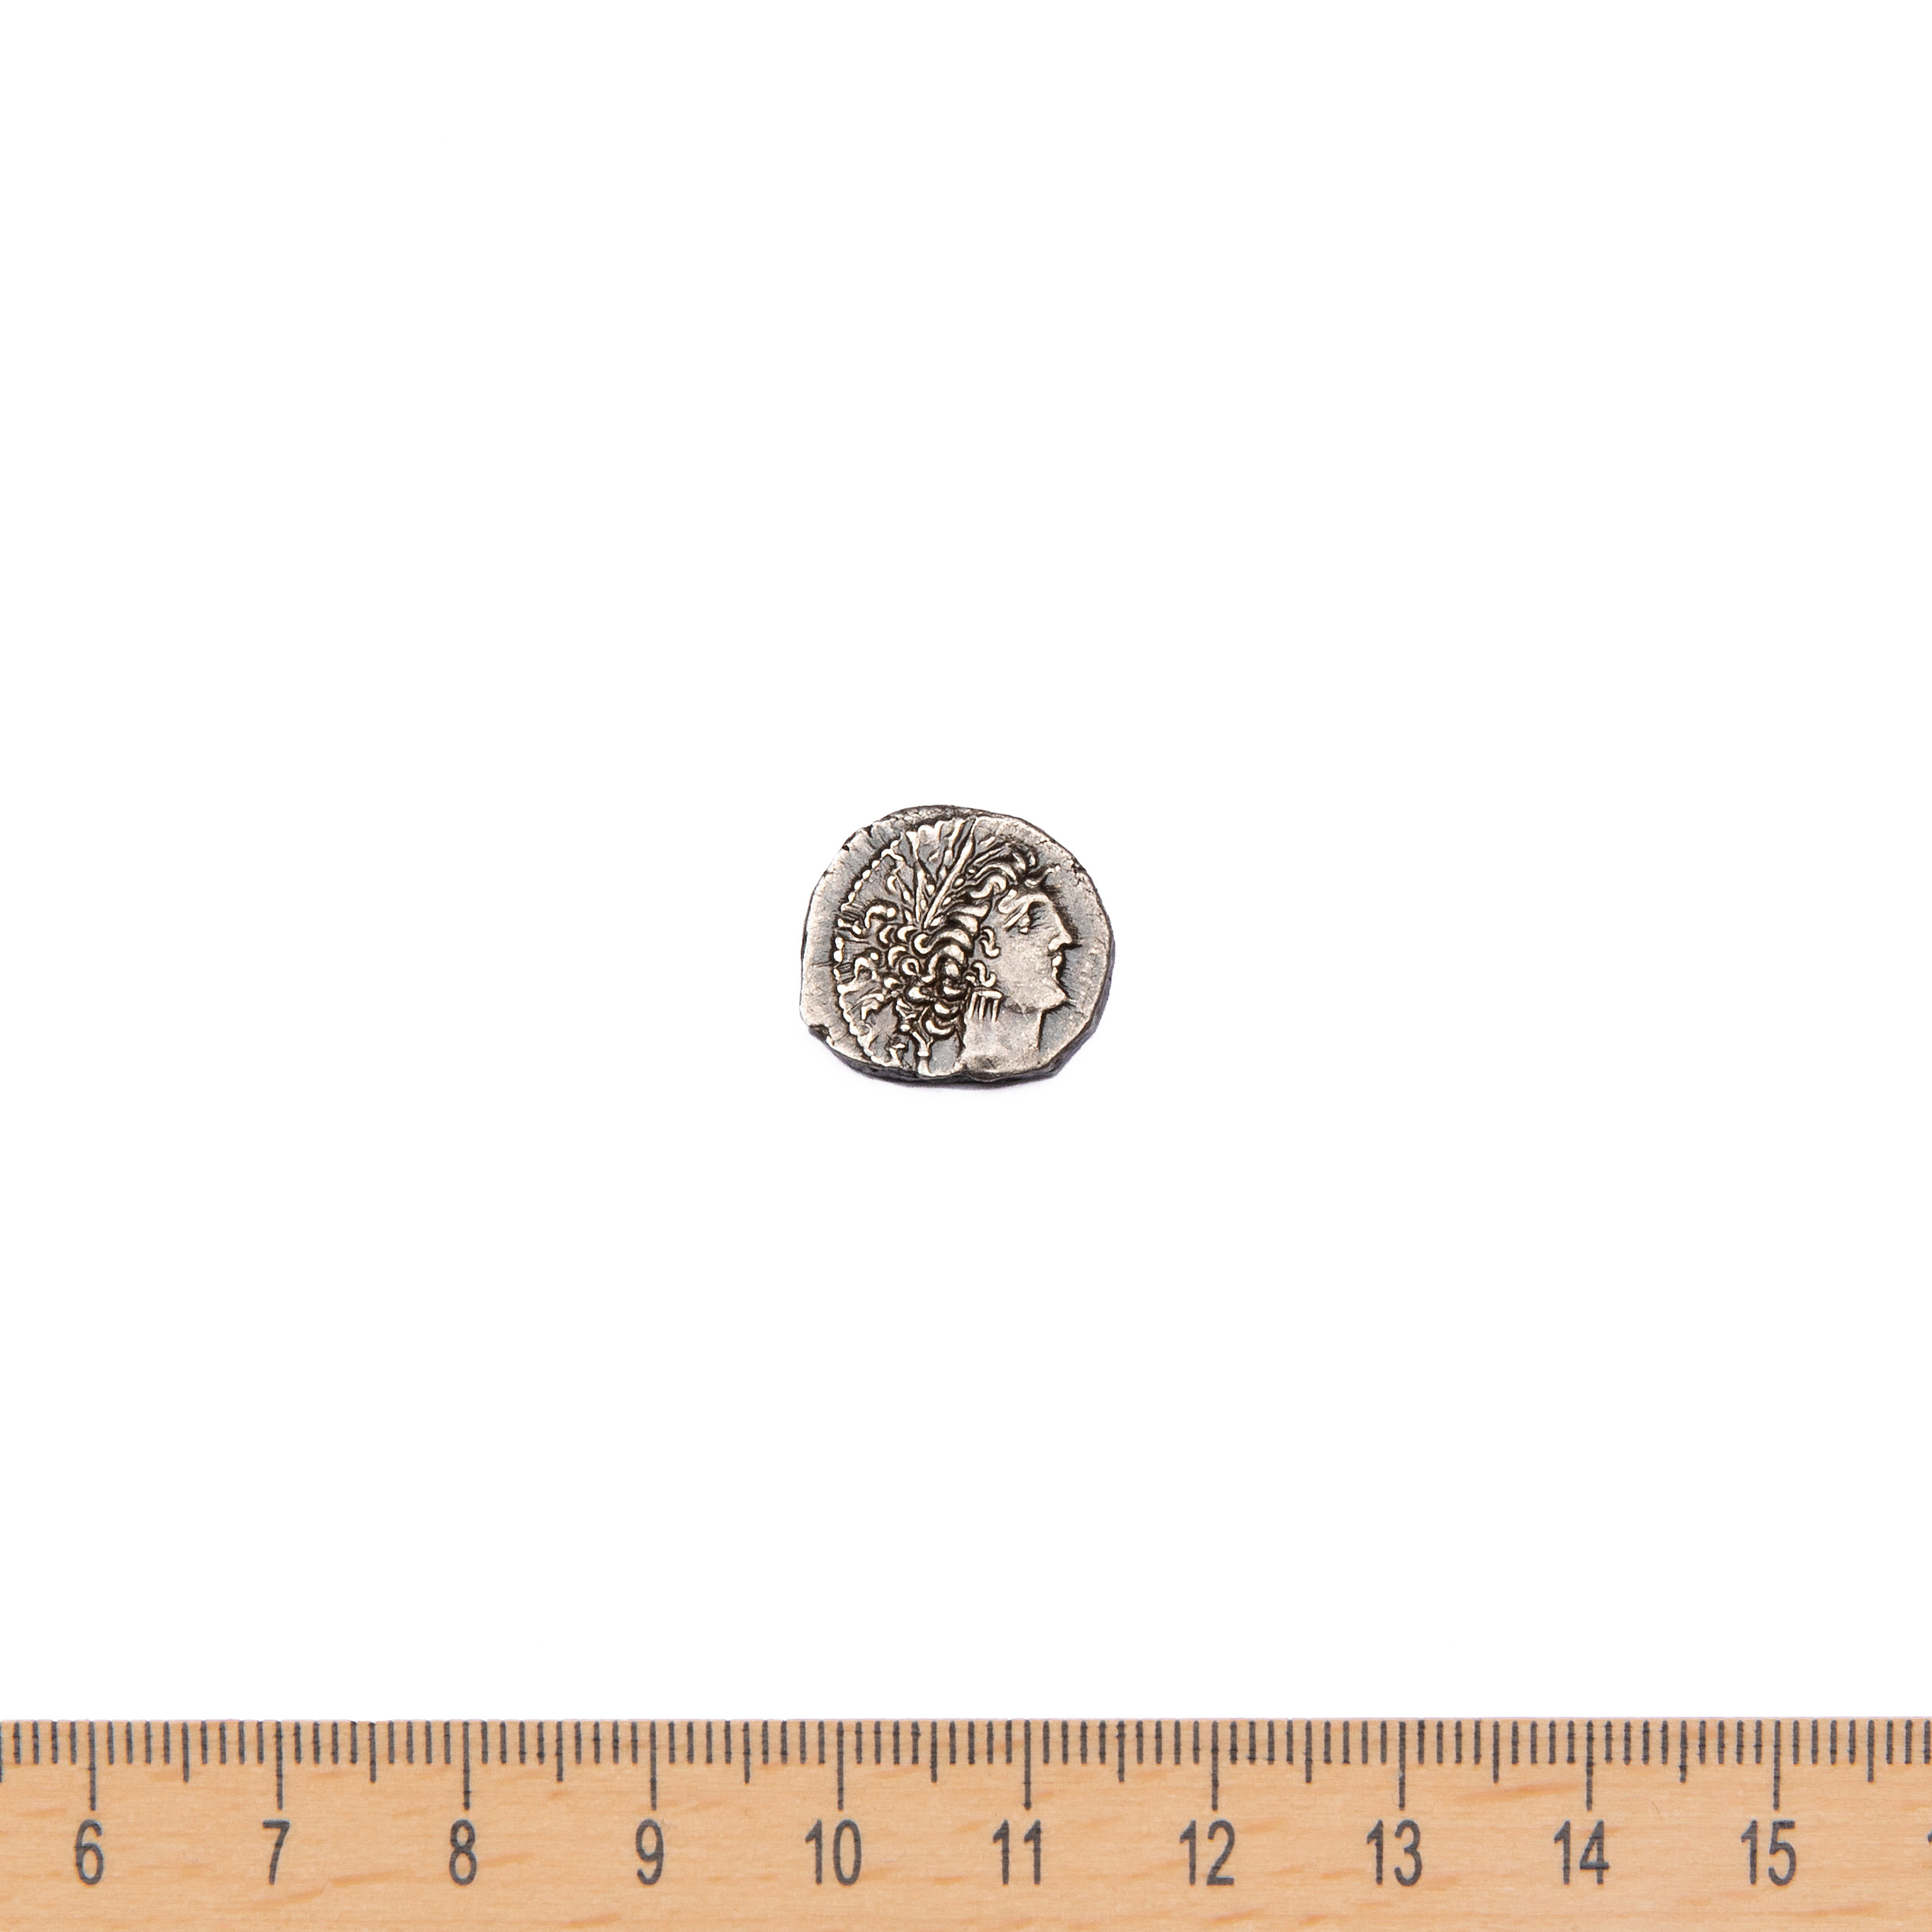 moneta - Dracma - celtico (SECOLI/ II a.C)